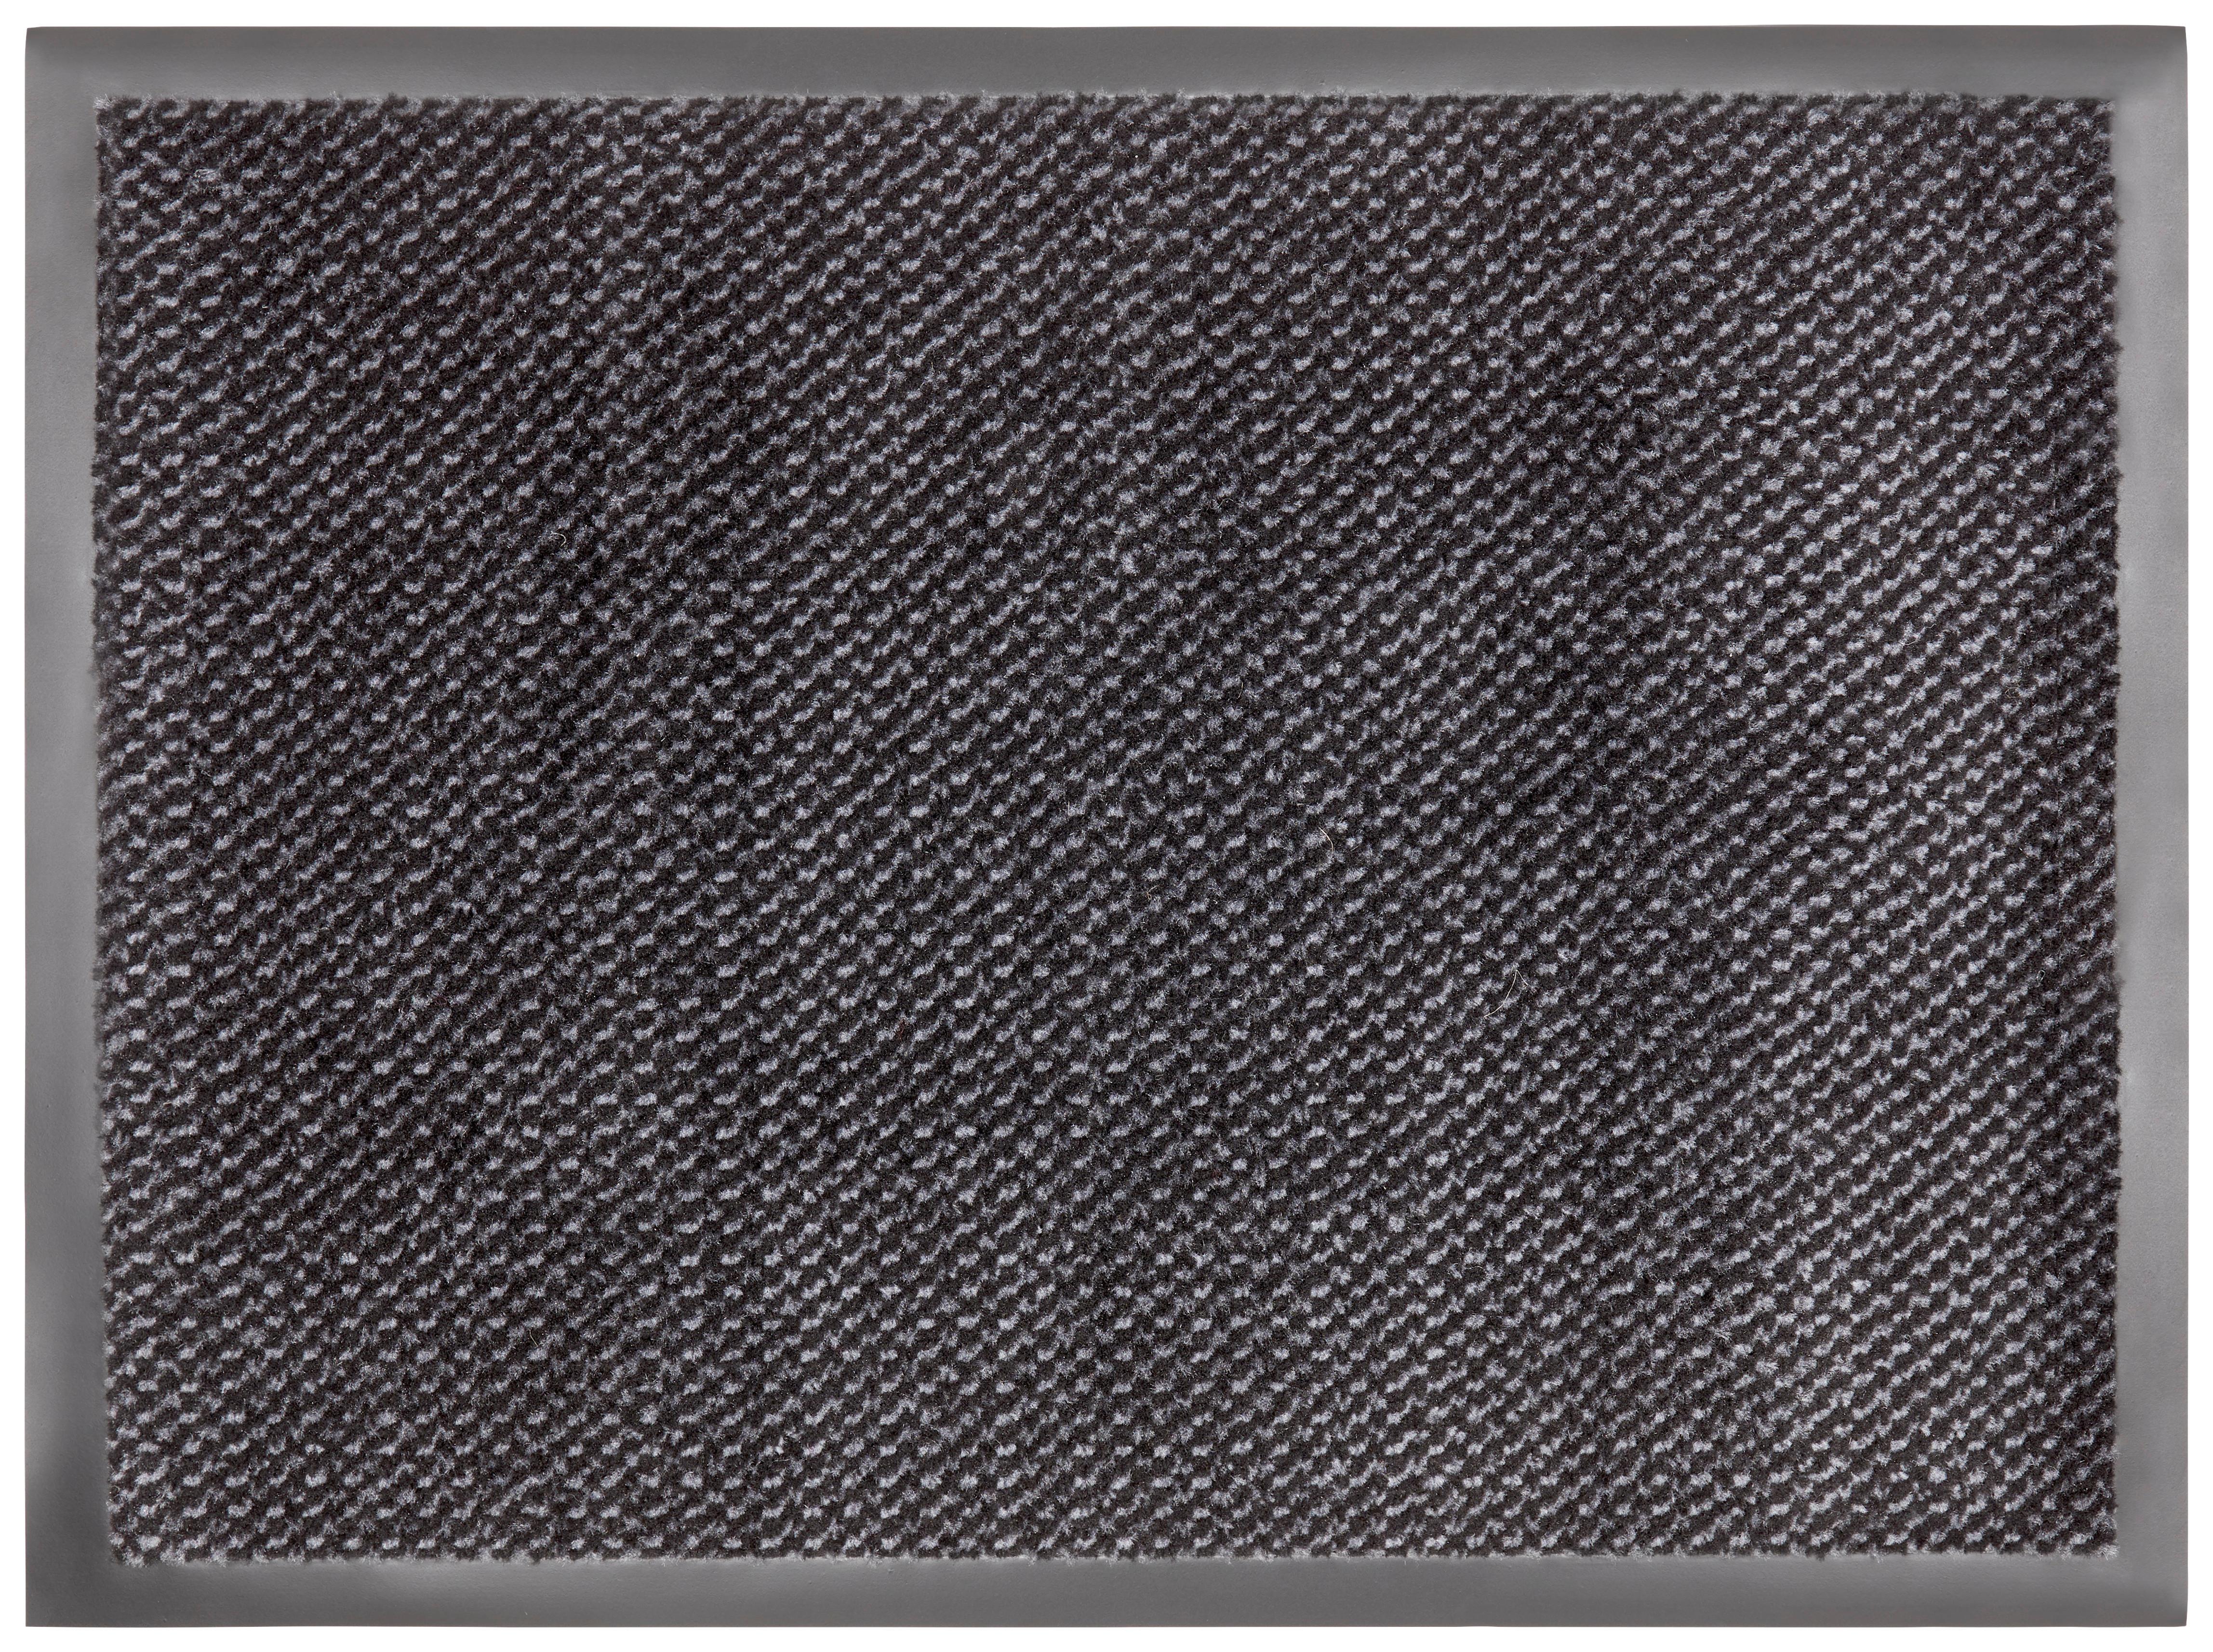 Lábtörlő Hamptons2 60/80 - Szürke/Fekete, konvencionális, Textil (60/80cm) - Modern Living